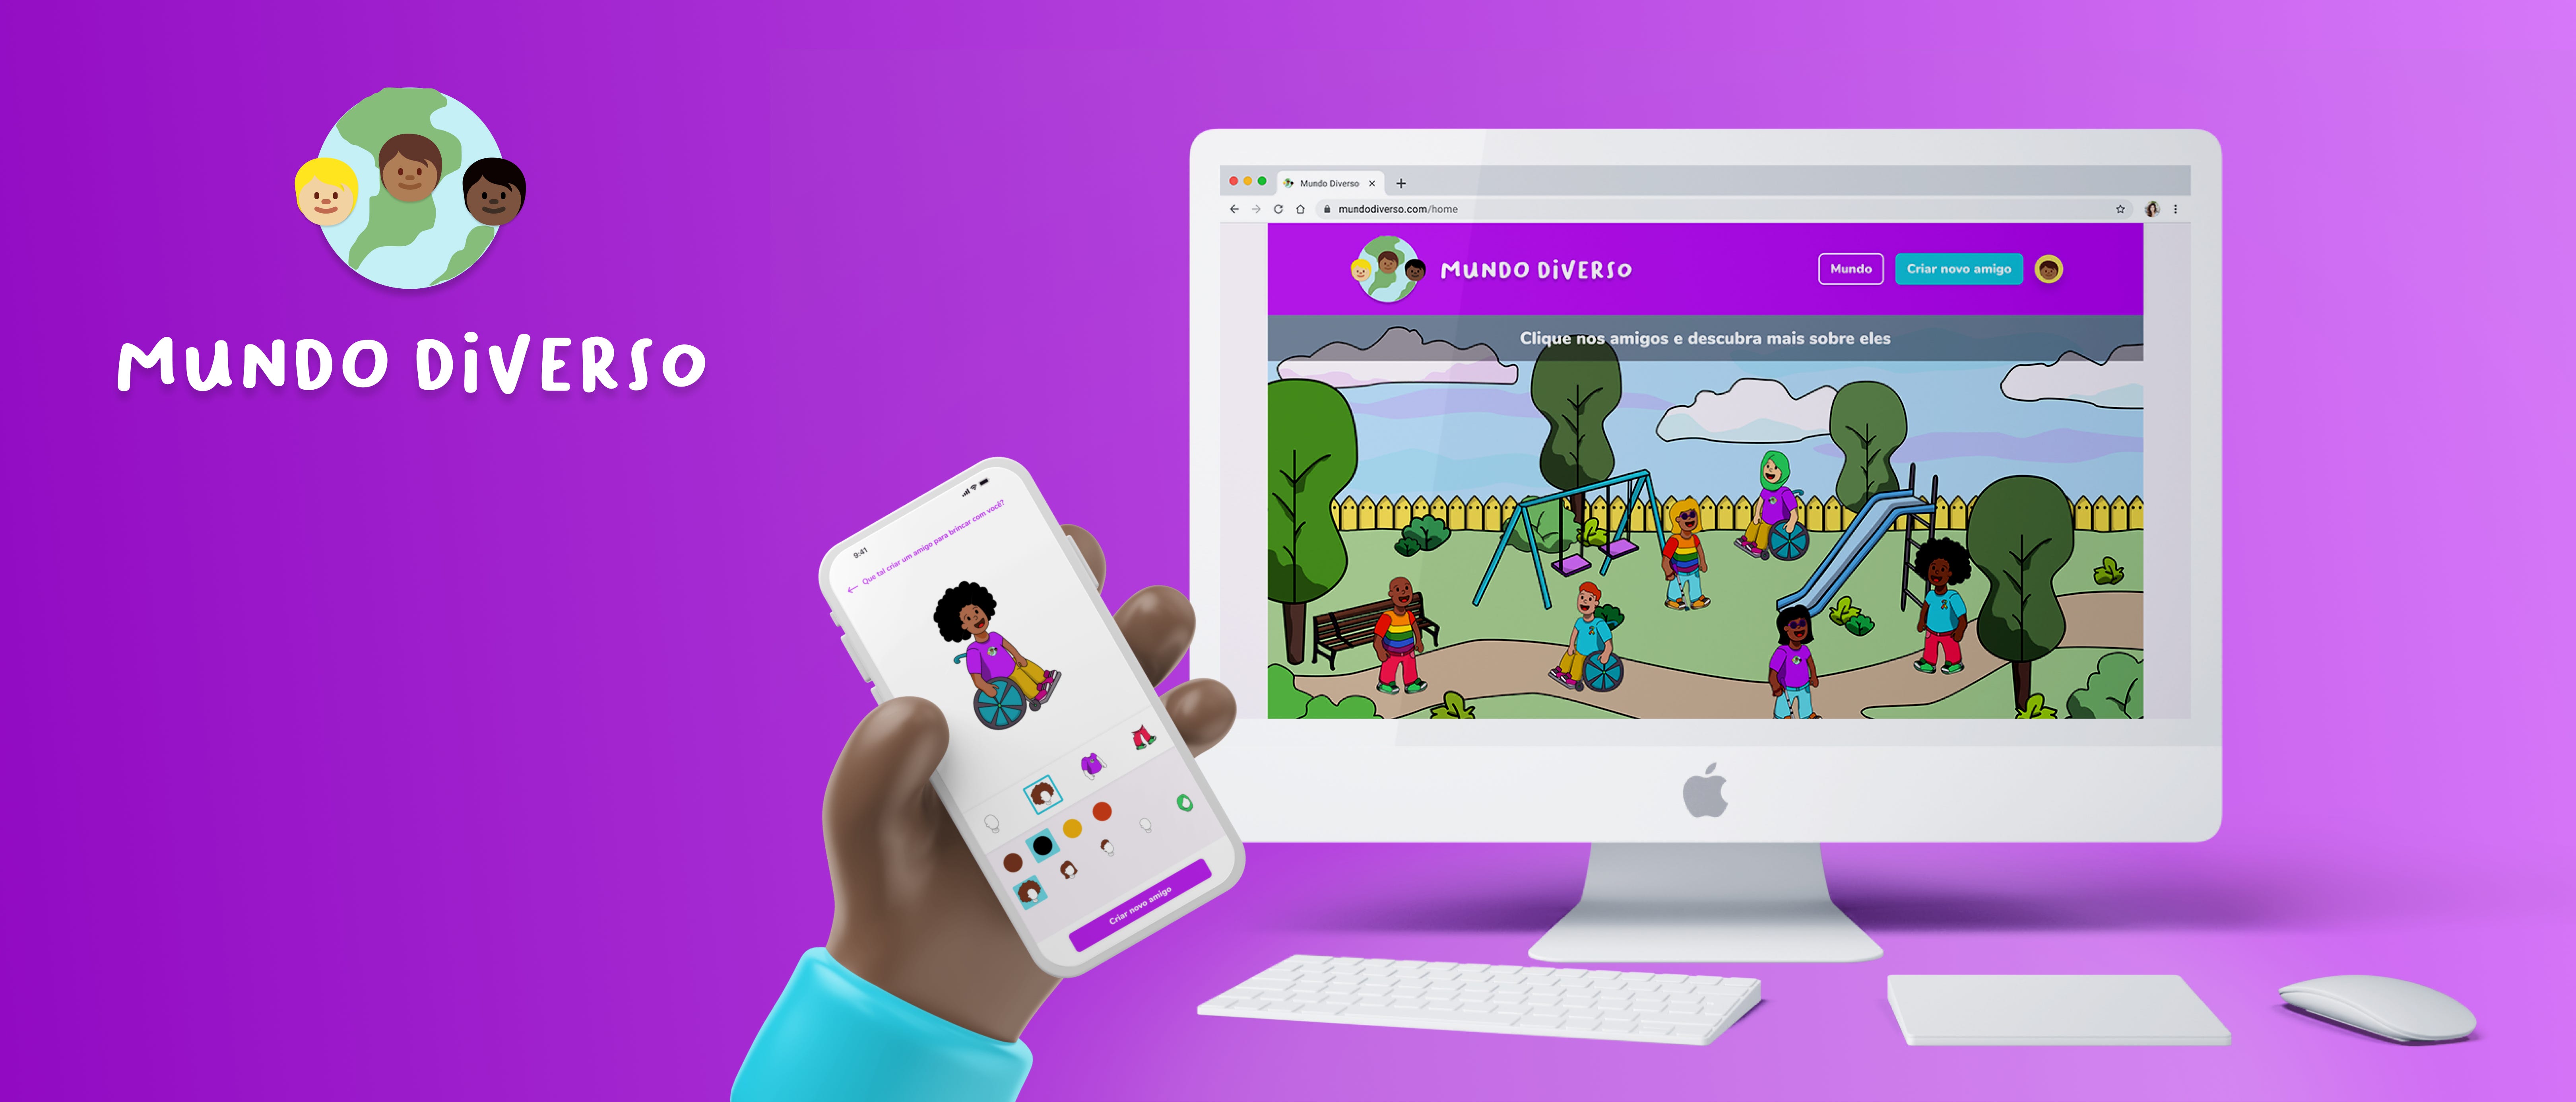 Mundos virtuais para o público infantil feminino – Wwwhat's new? –  Aplicações e tecnologia